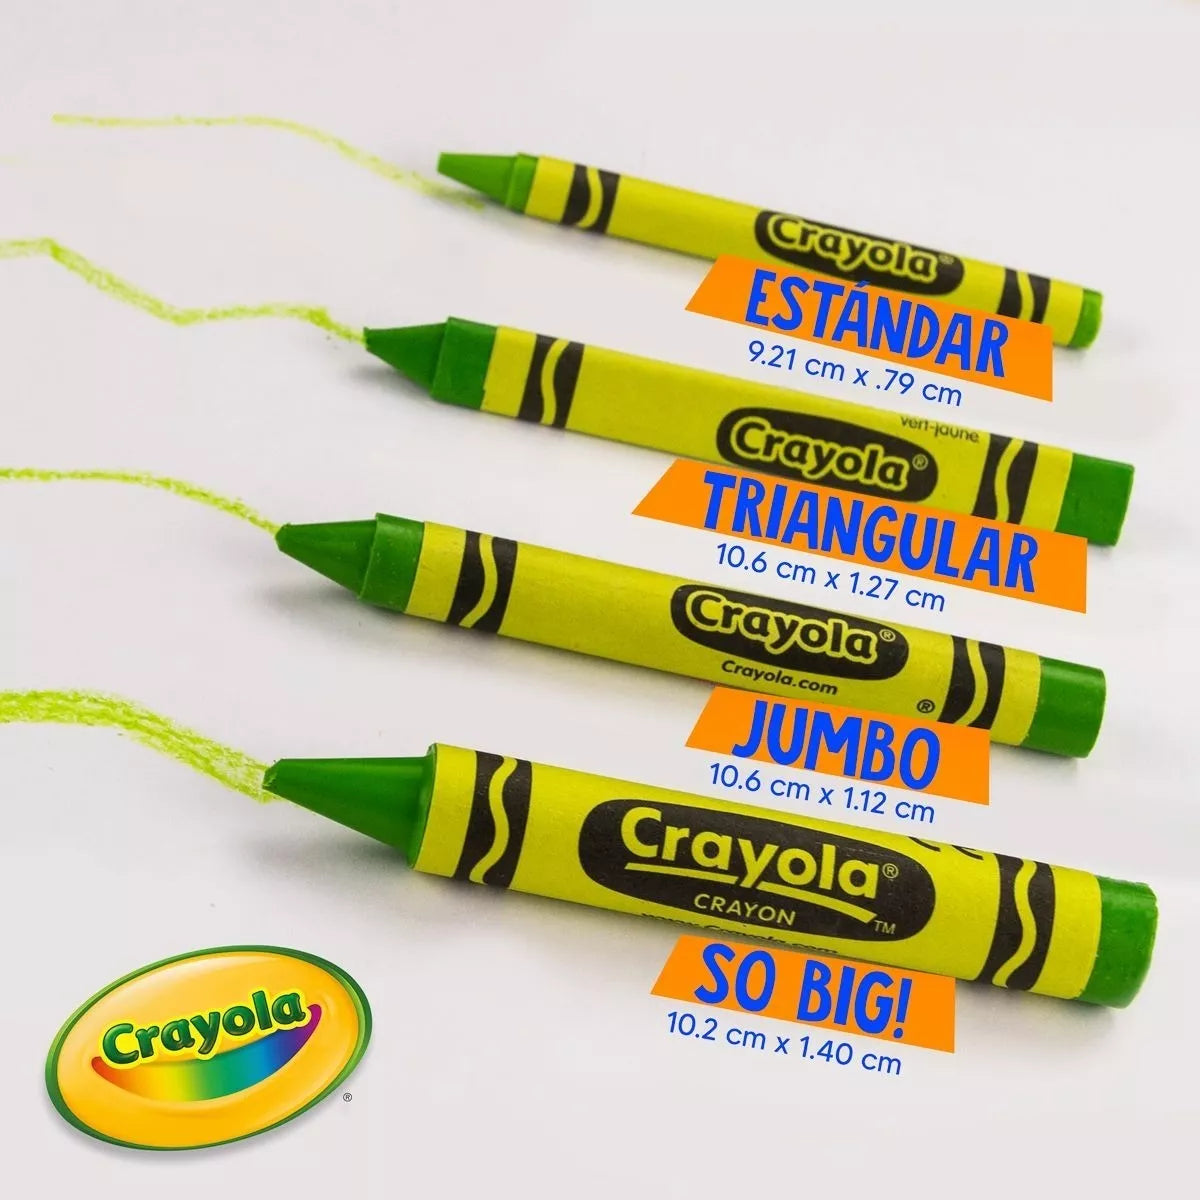 Crayones Crayola Estándar Estuche Con 6 Colores Diferentes - MarchanteMX